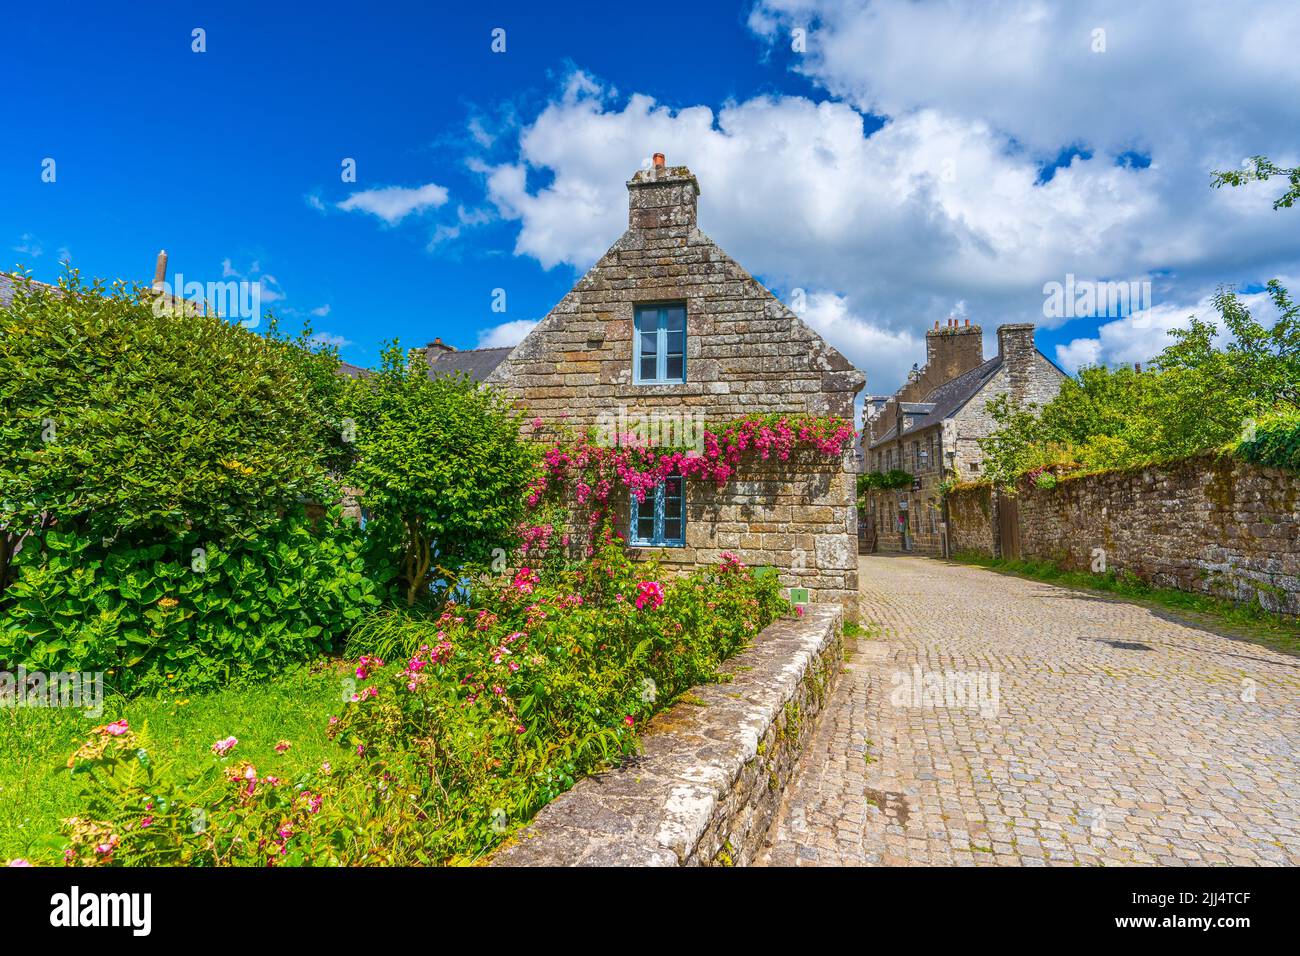 Maisons typiques en pierre dans le village breton de Locronan (France) Banque D'Images